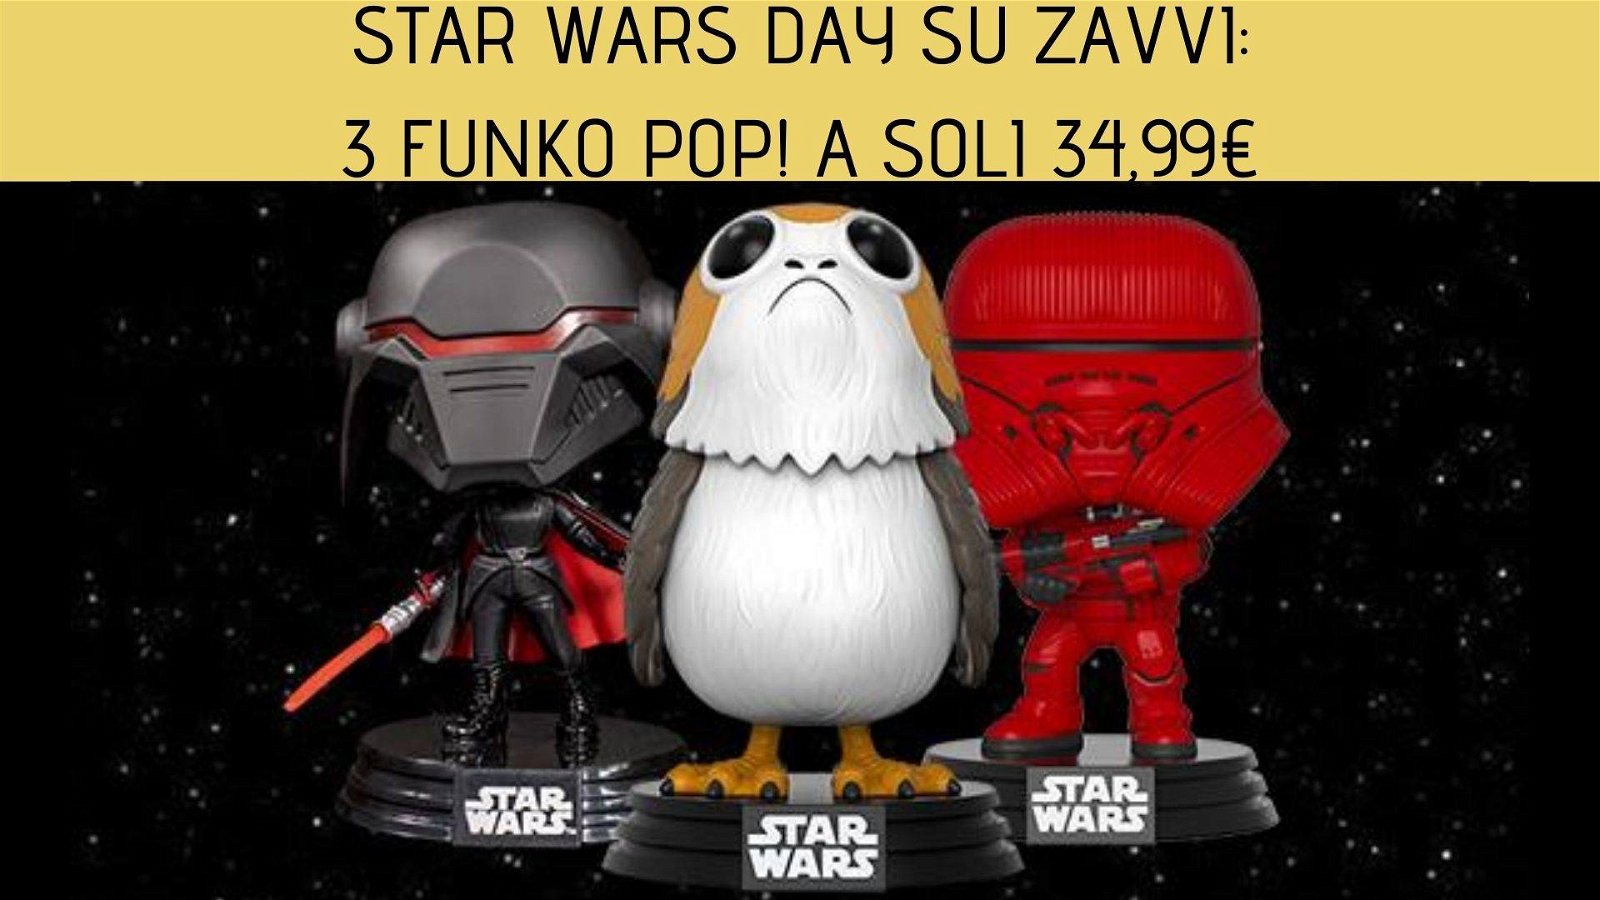 Immagine di Star Wars Day: 3 Funko Pop! a soli 34,99€ su Zavvi